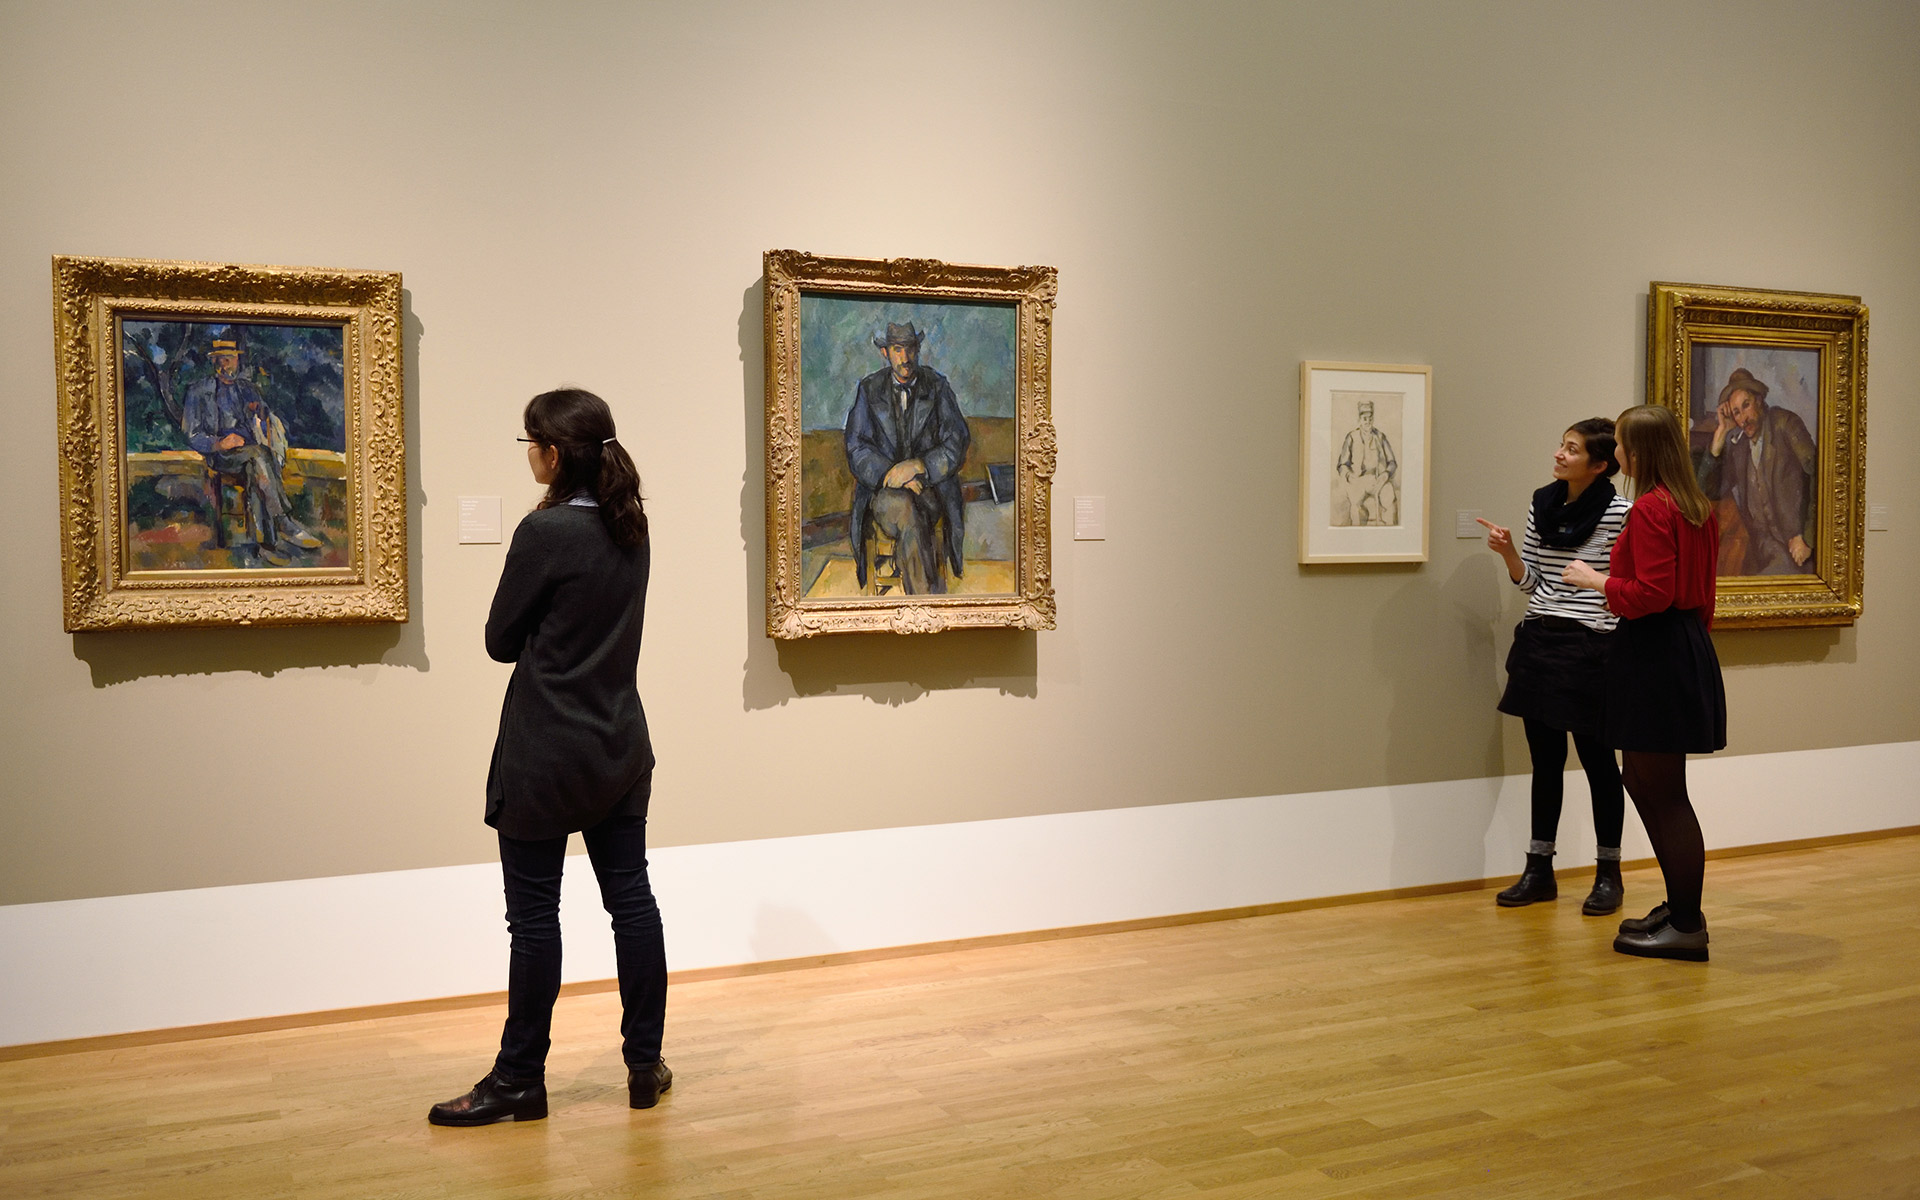 Ein Museumsraum mit vier Gemälden und drei Personen, die diese betrachten.